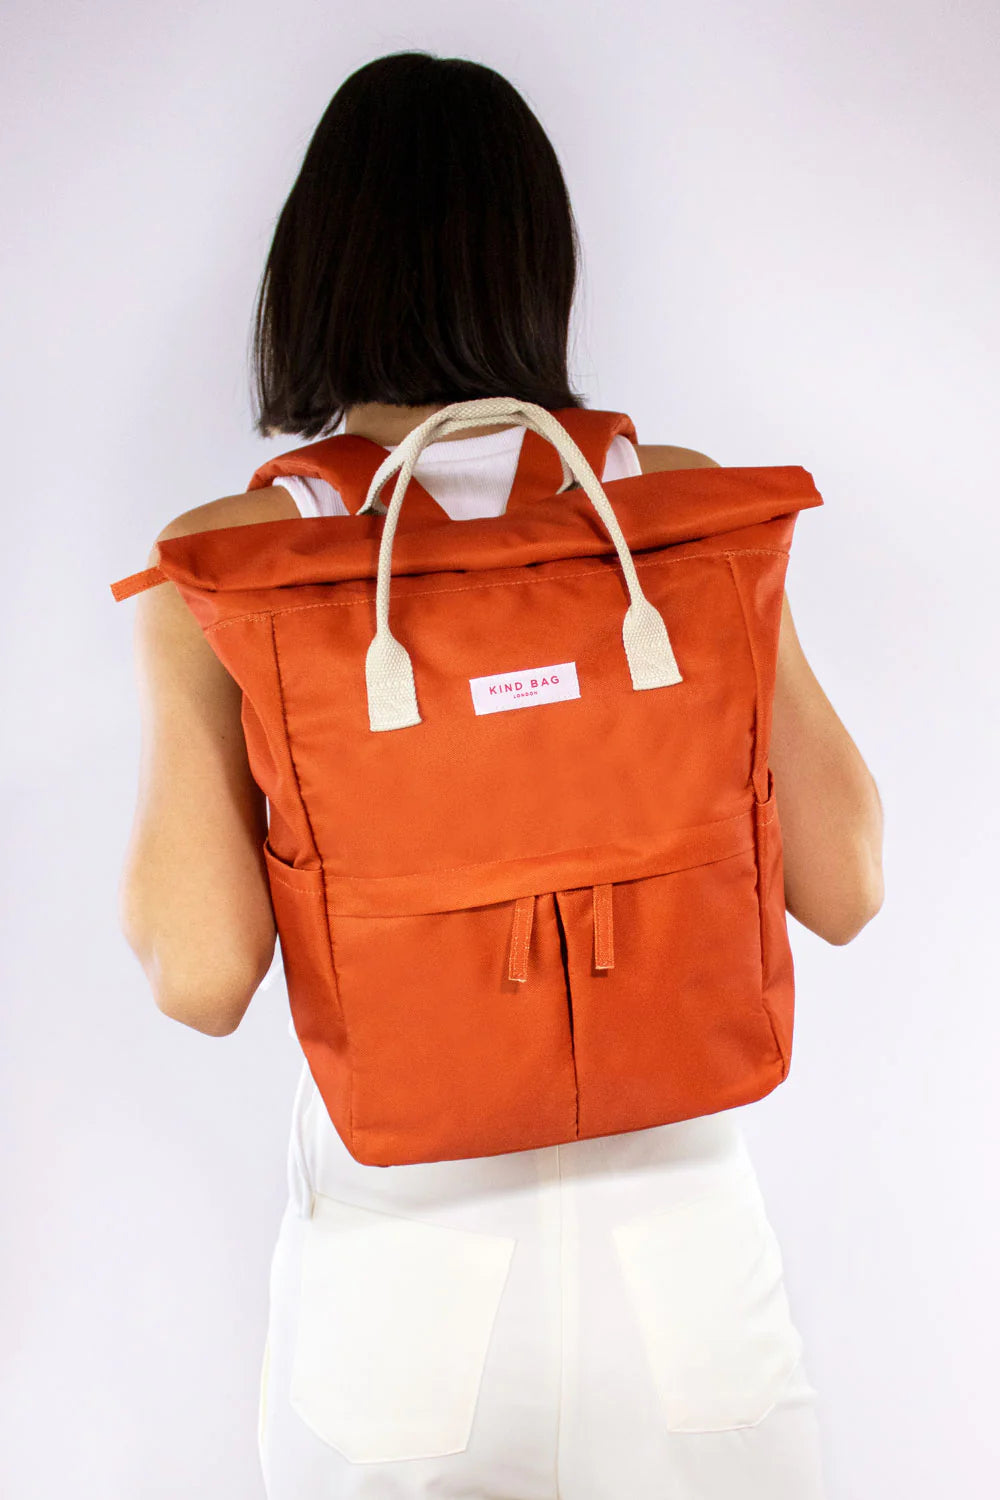 Kind Bag Hackney Medium Back Pack  - Burnt Orange